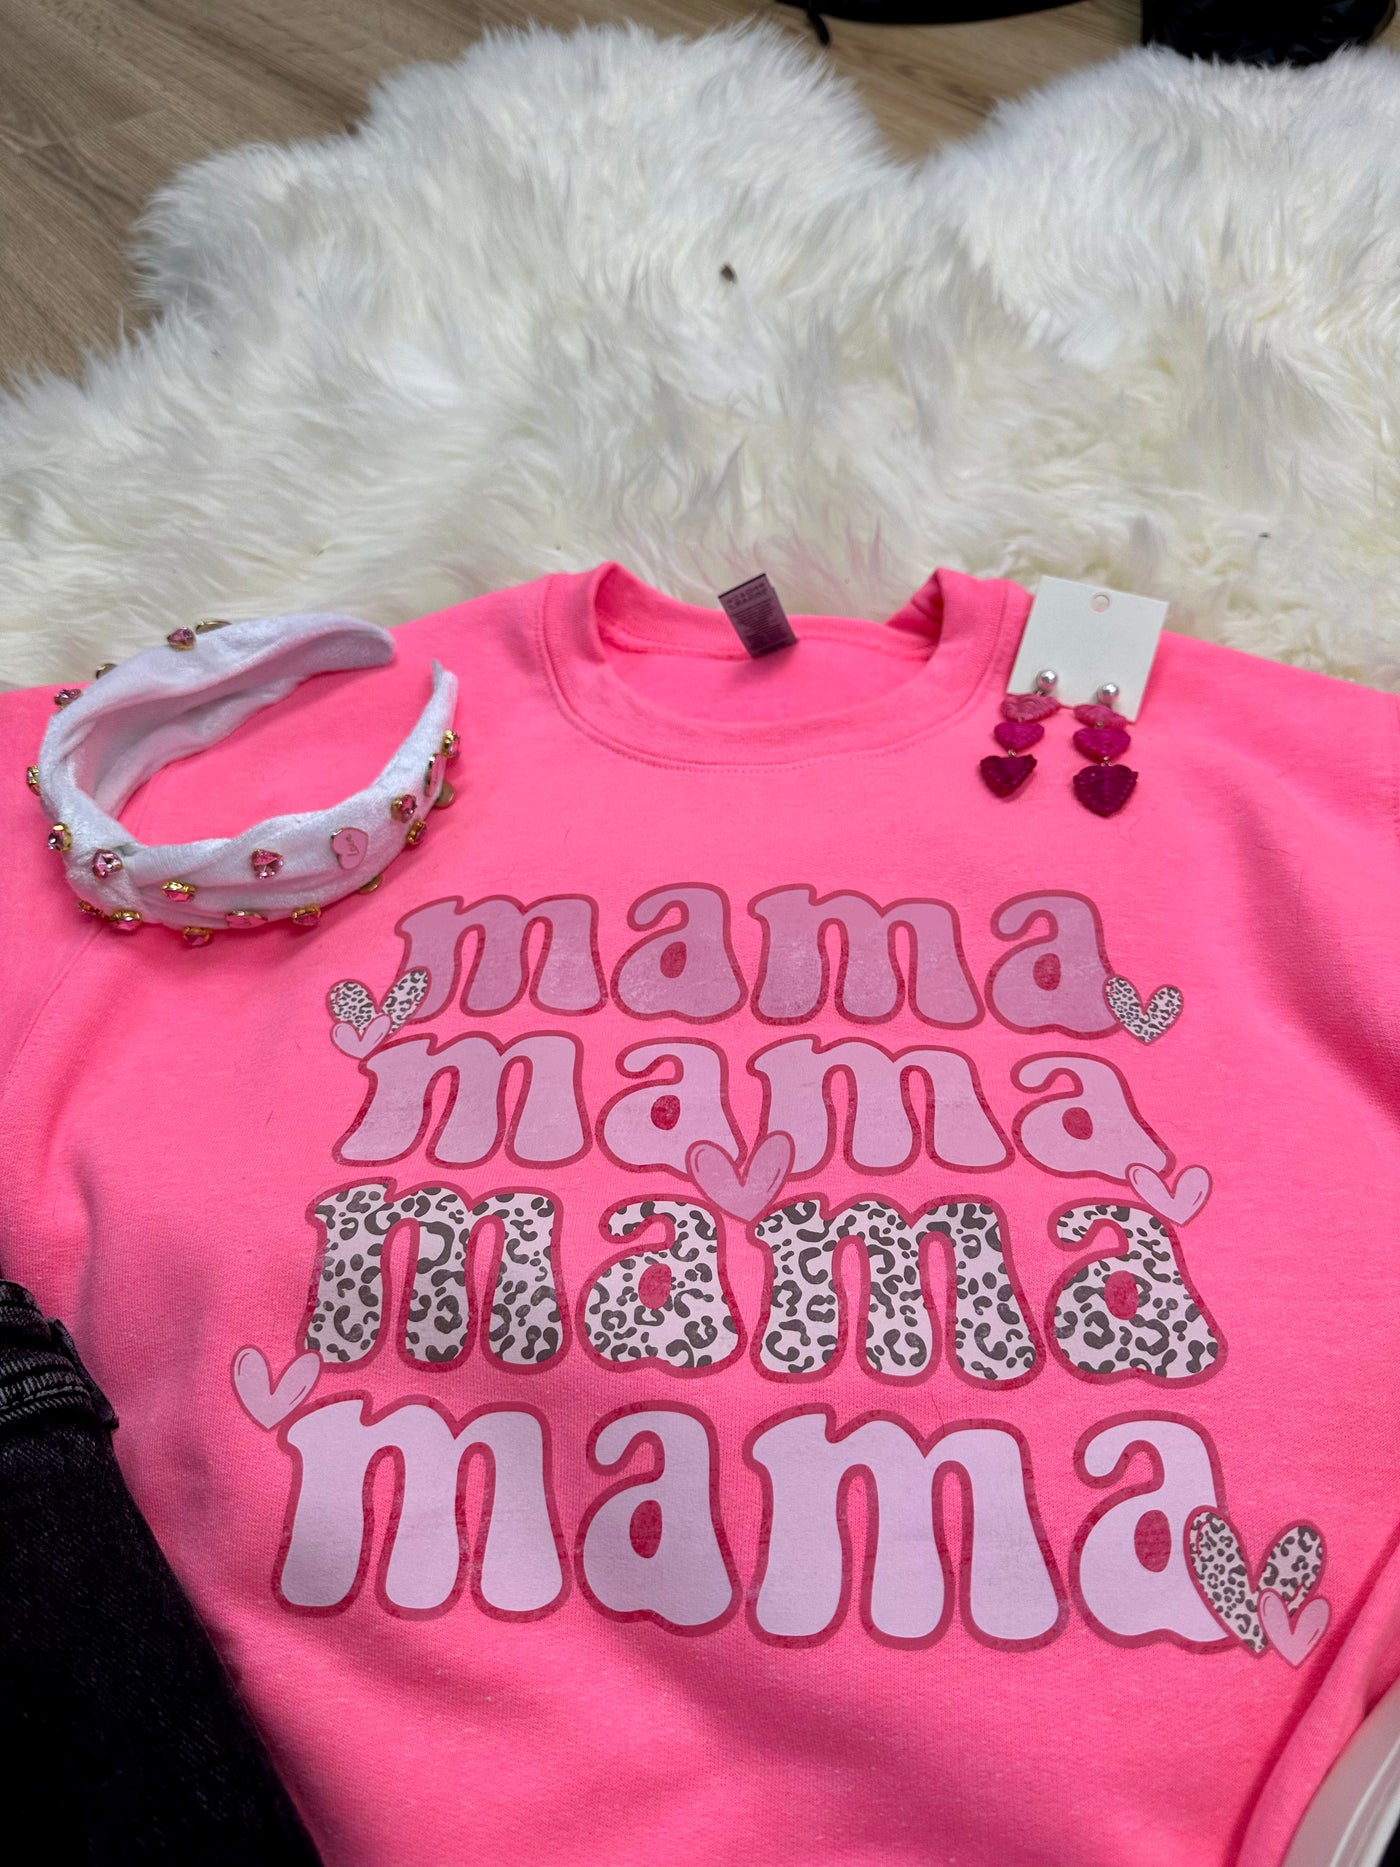 Mama Sweatshirt on Neon Pink